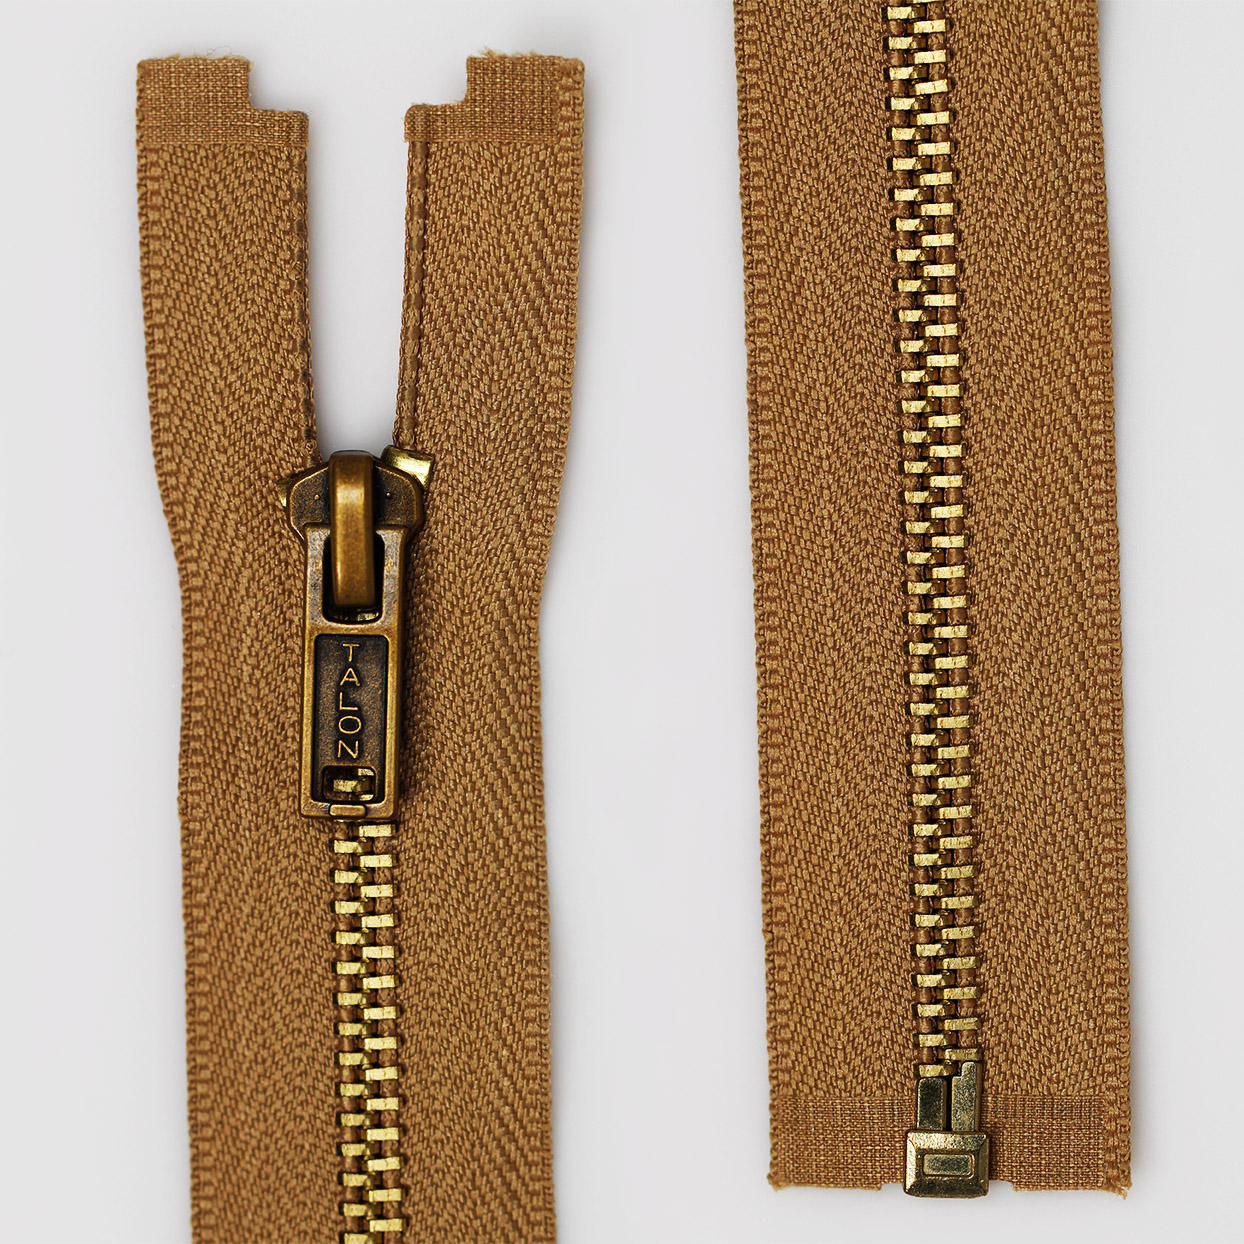 Talon Zipper.  Zipper, My style, Vintage